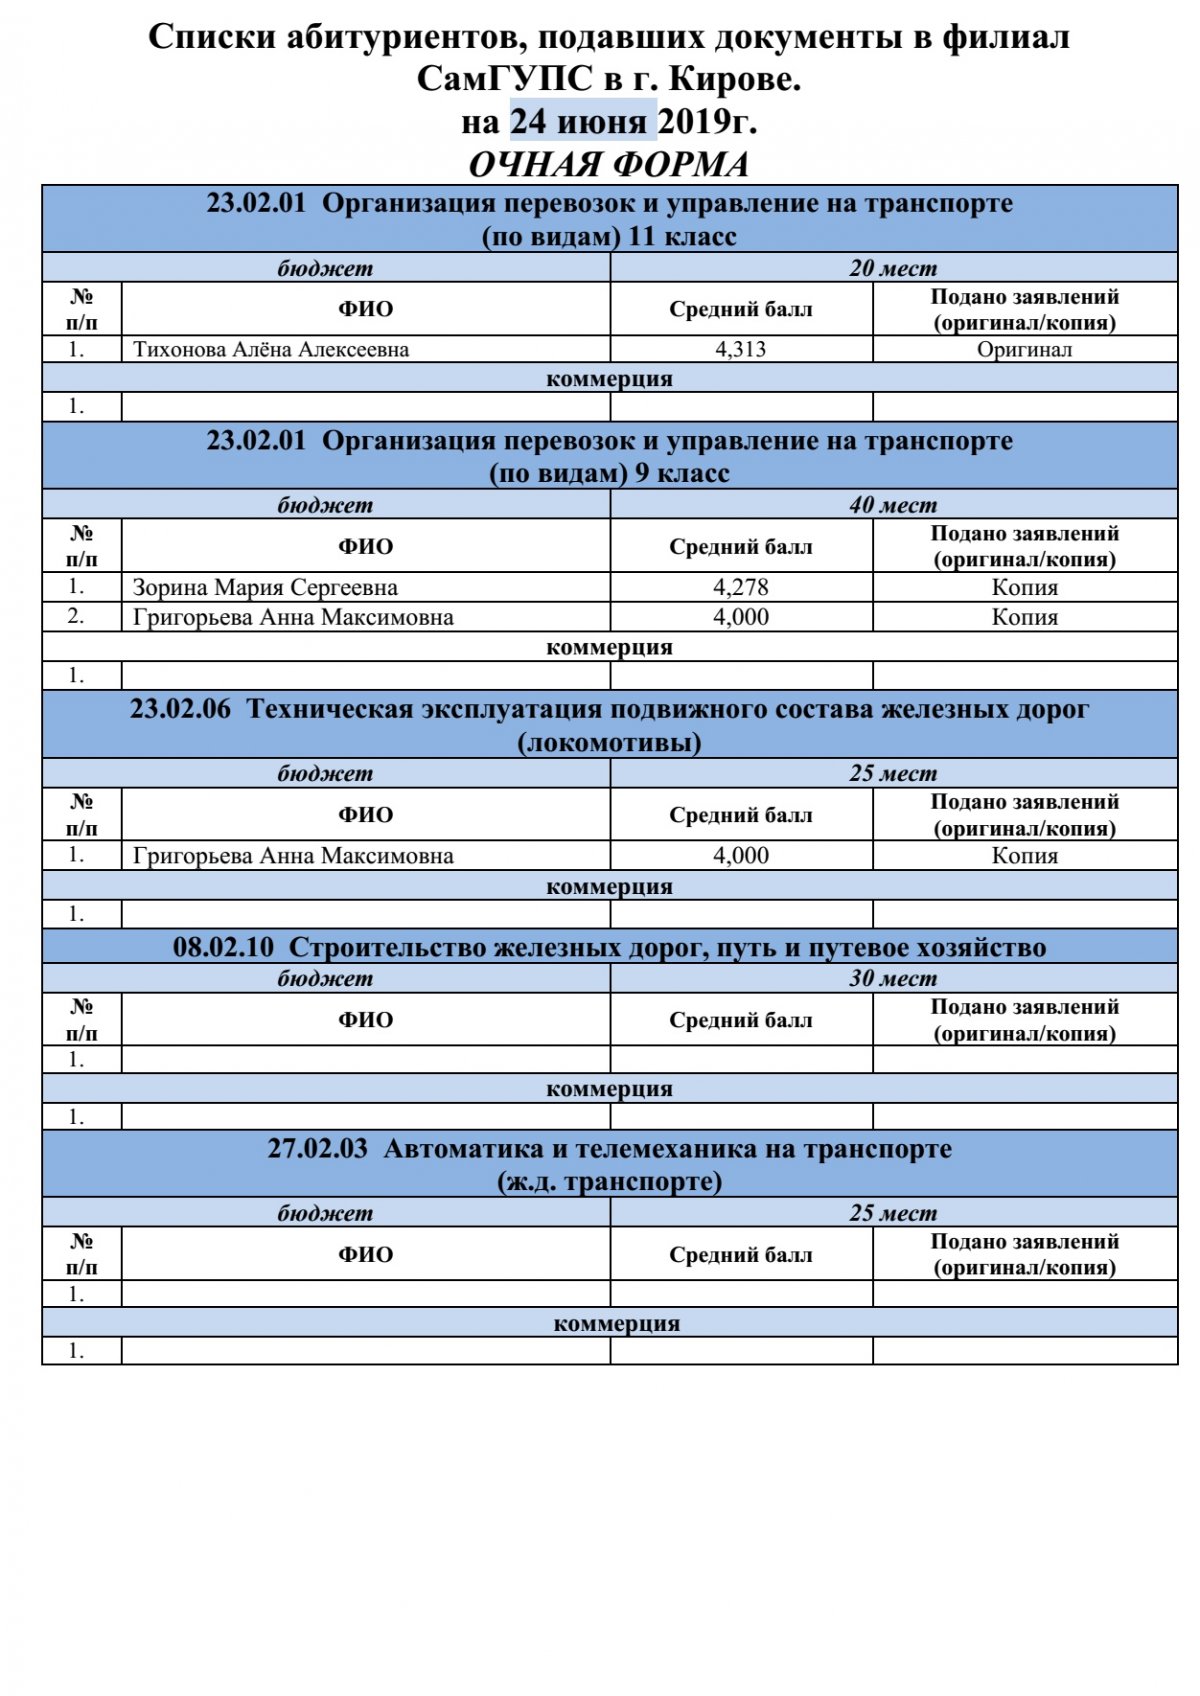 Списки абитуриентов, подавших документы в филиал СамГУПС в г. Кирове на 24 июня